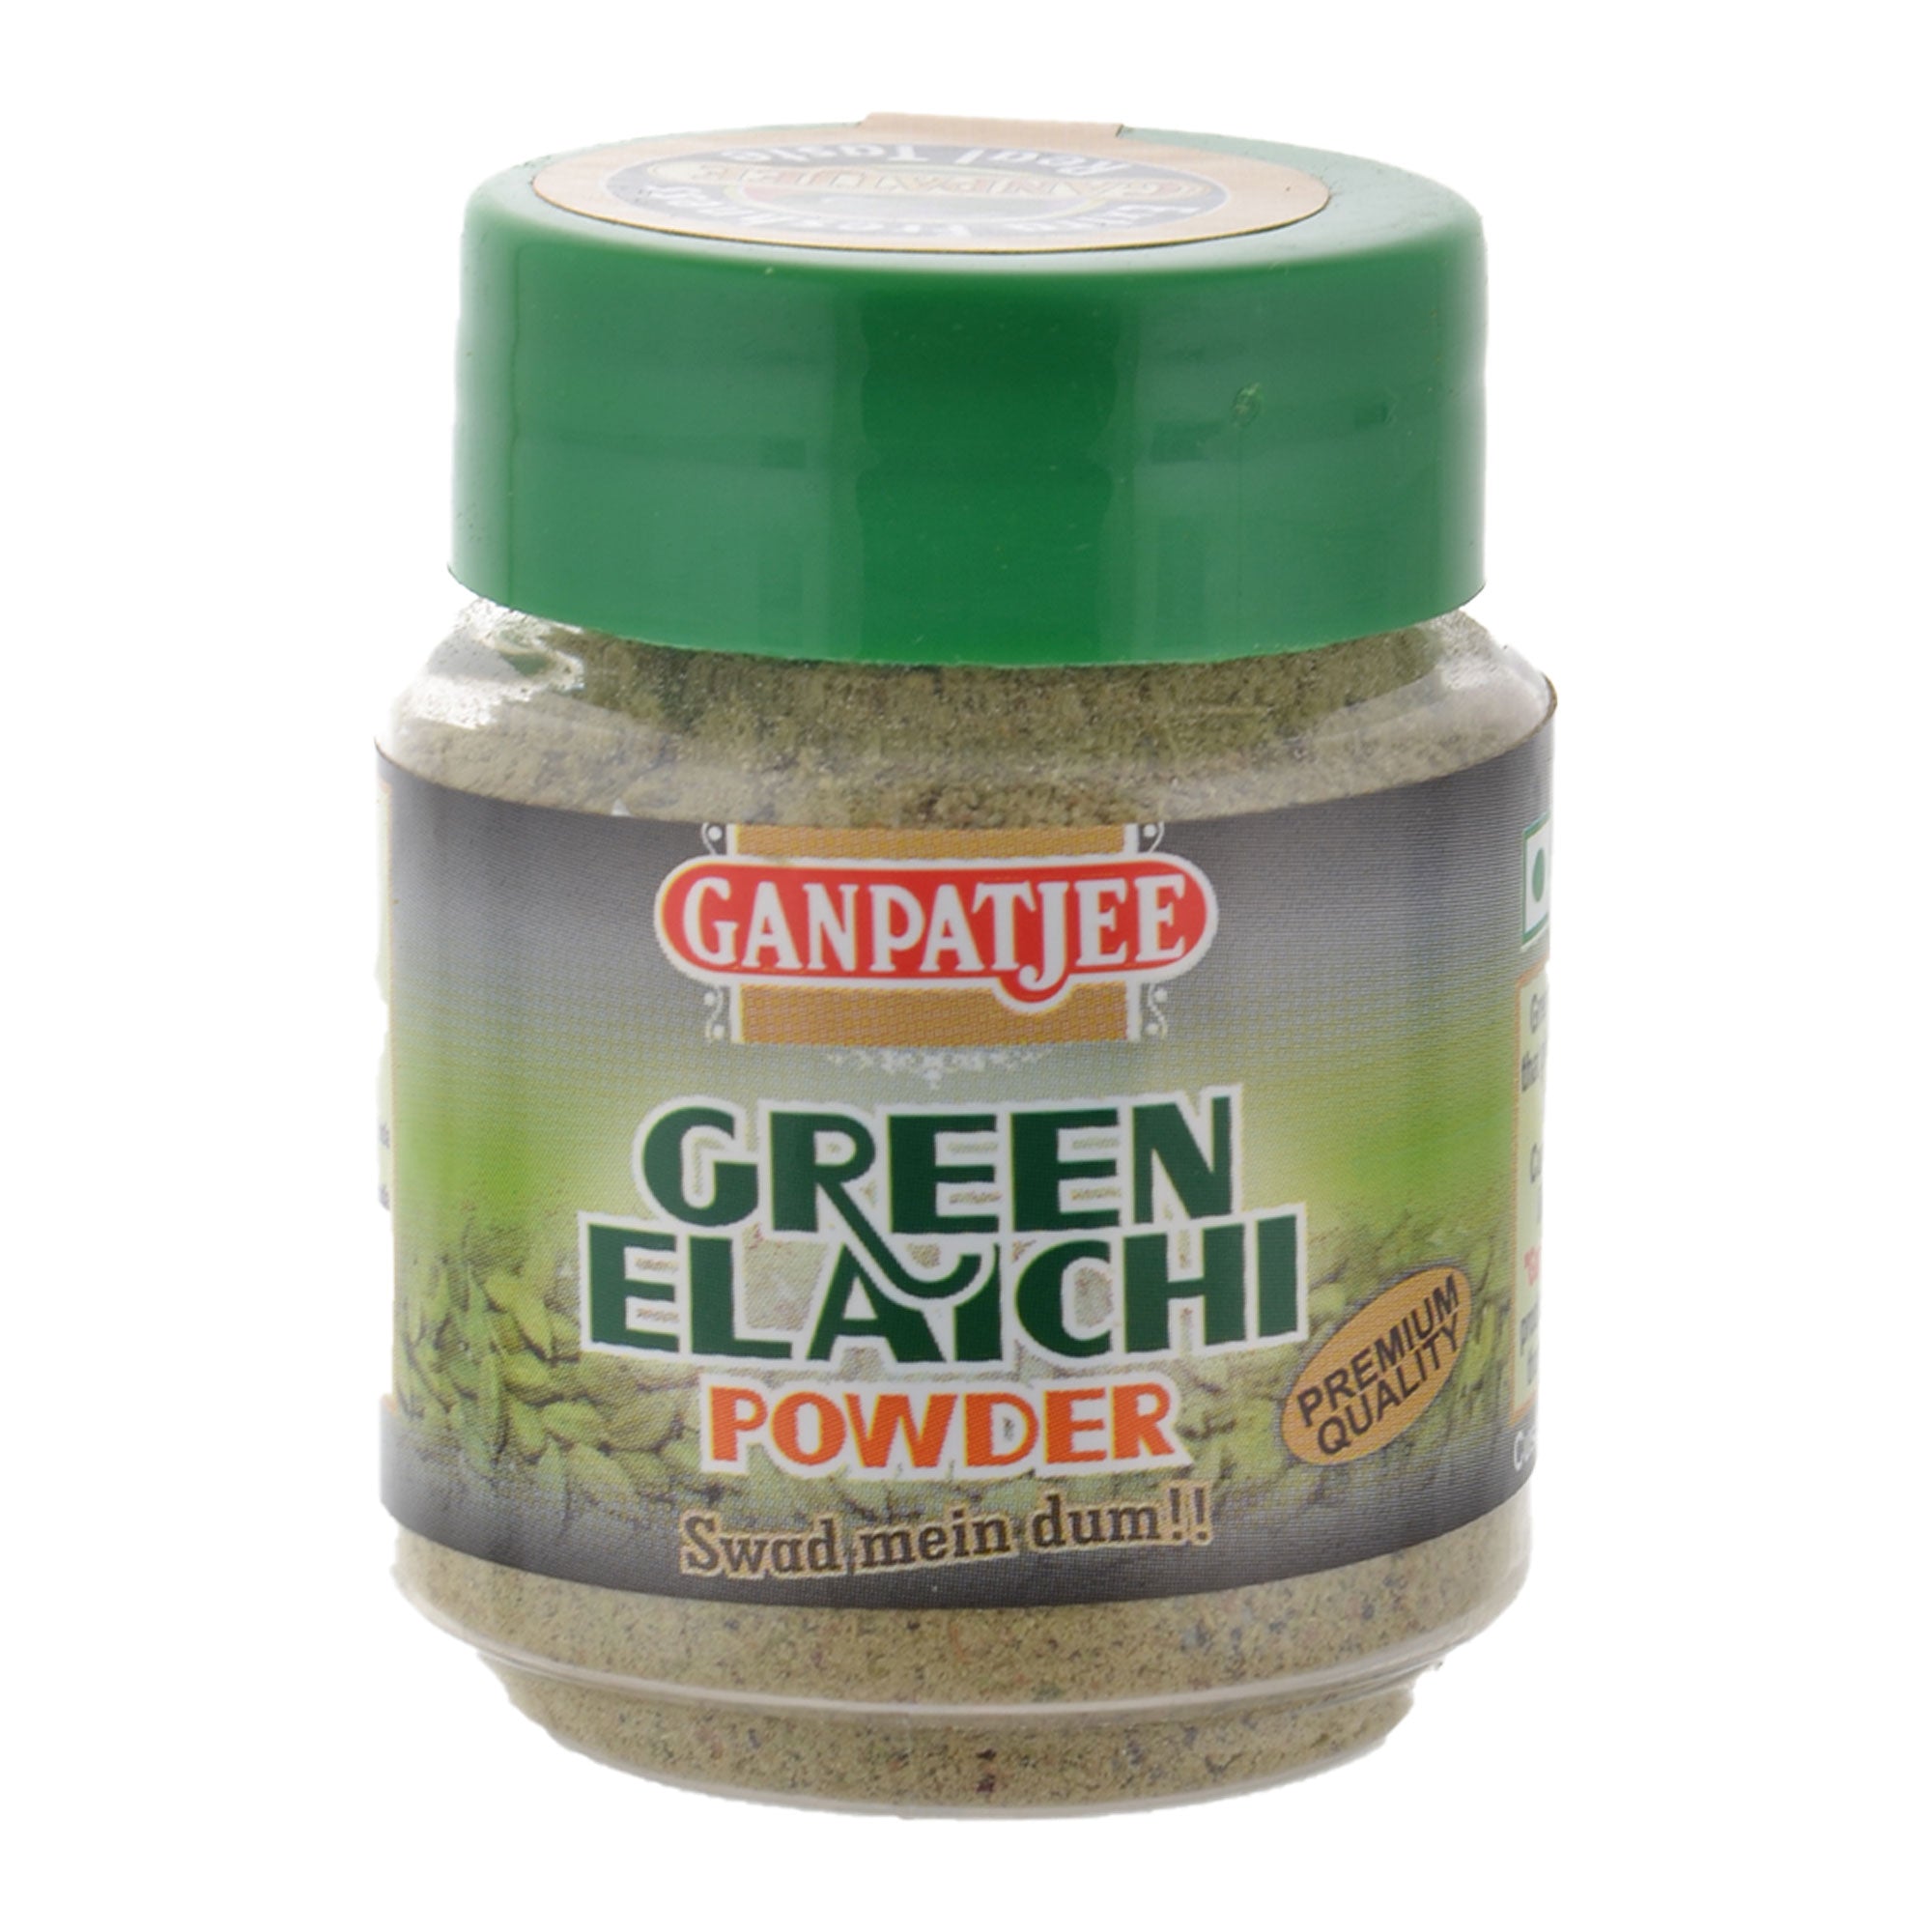 Ganpatjee Green Elaichi Cardamom Powder 25g